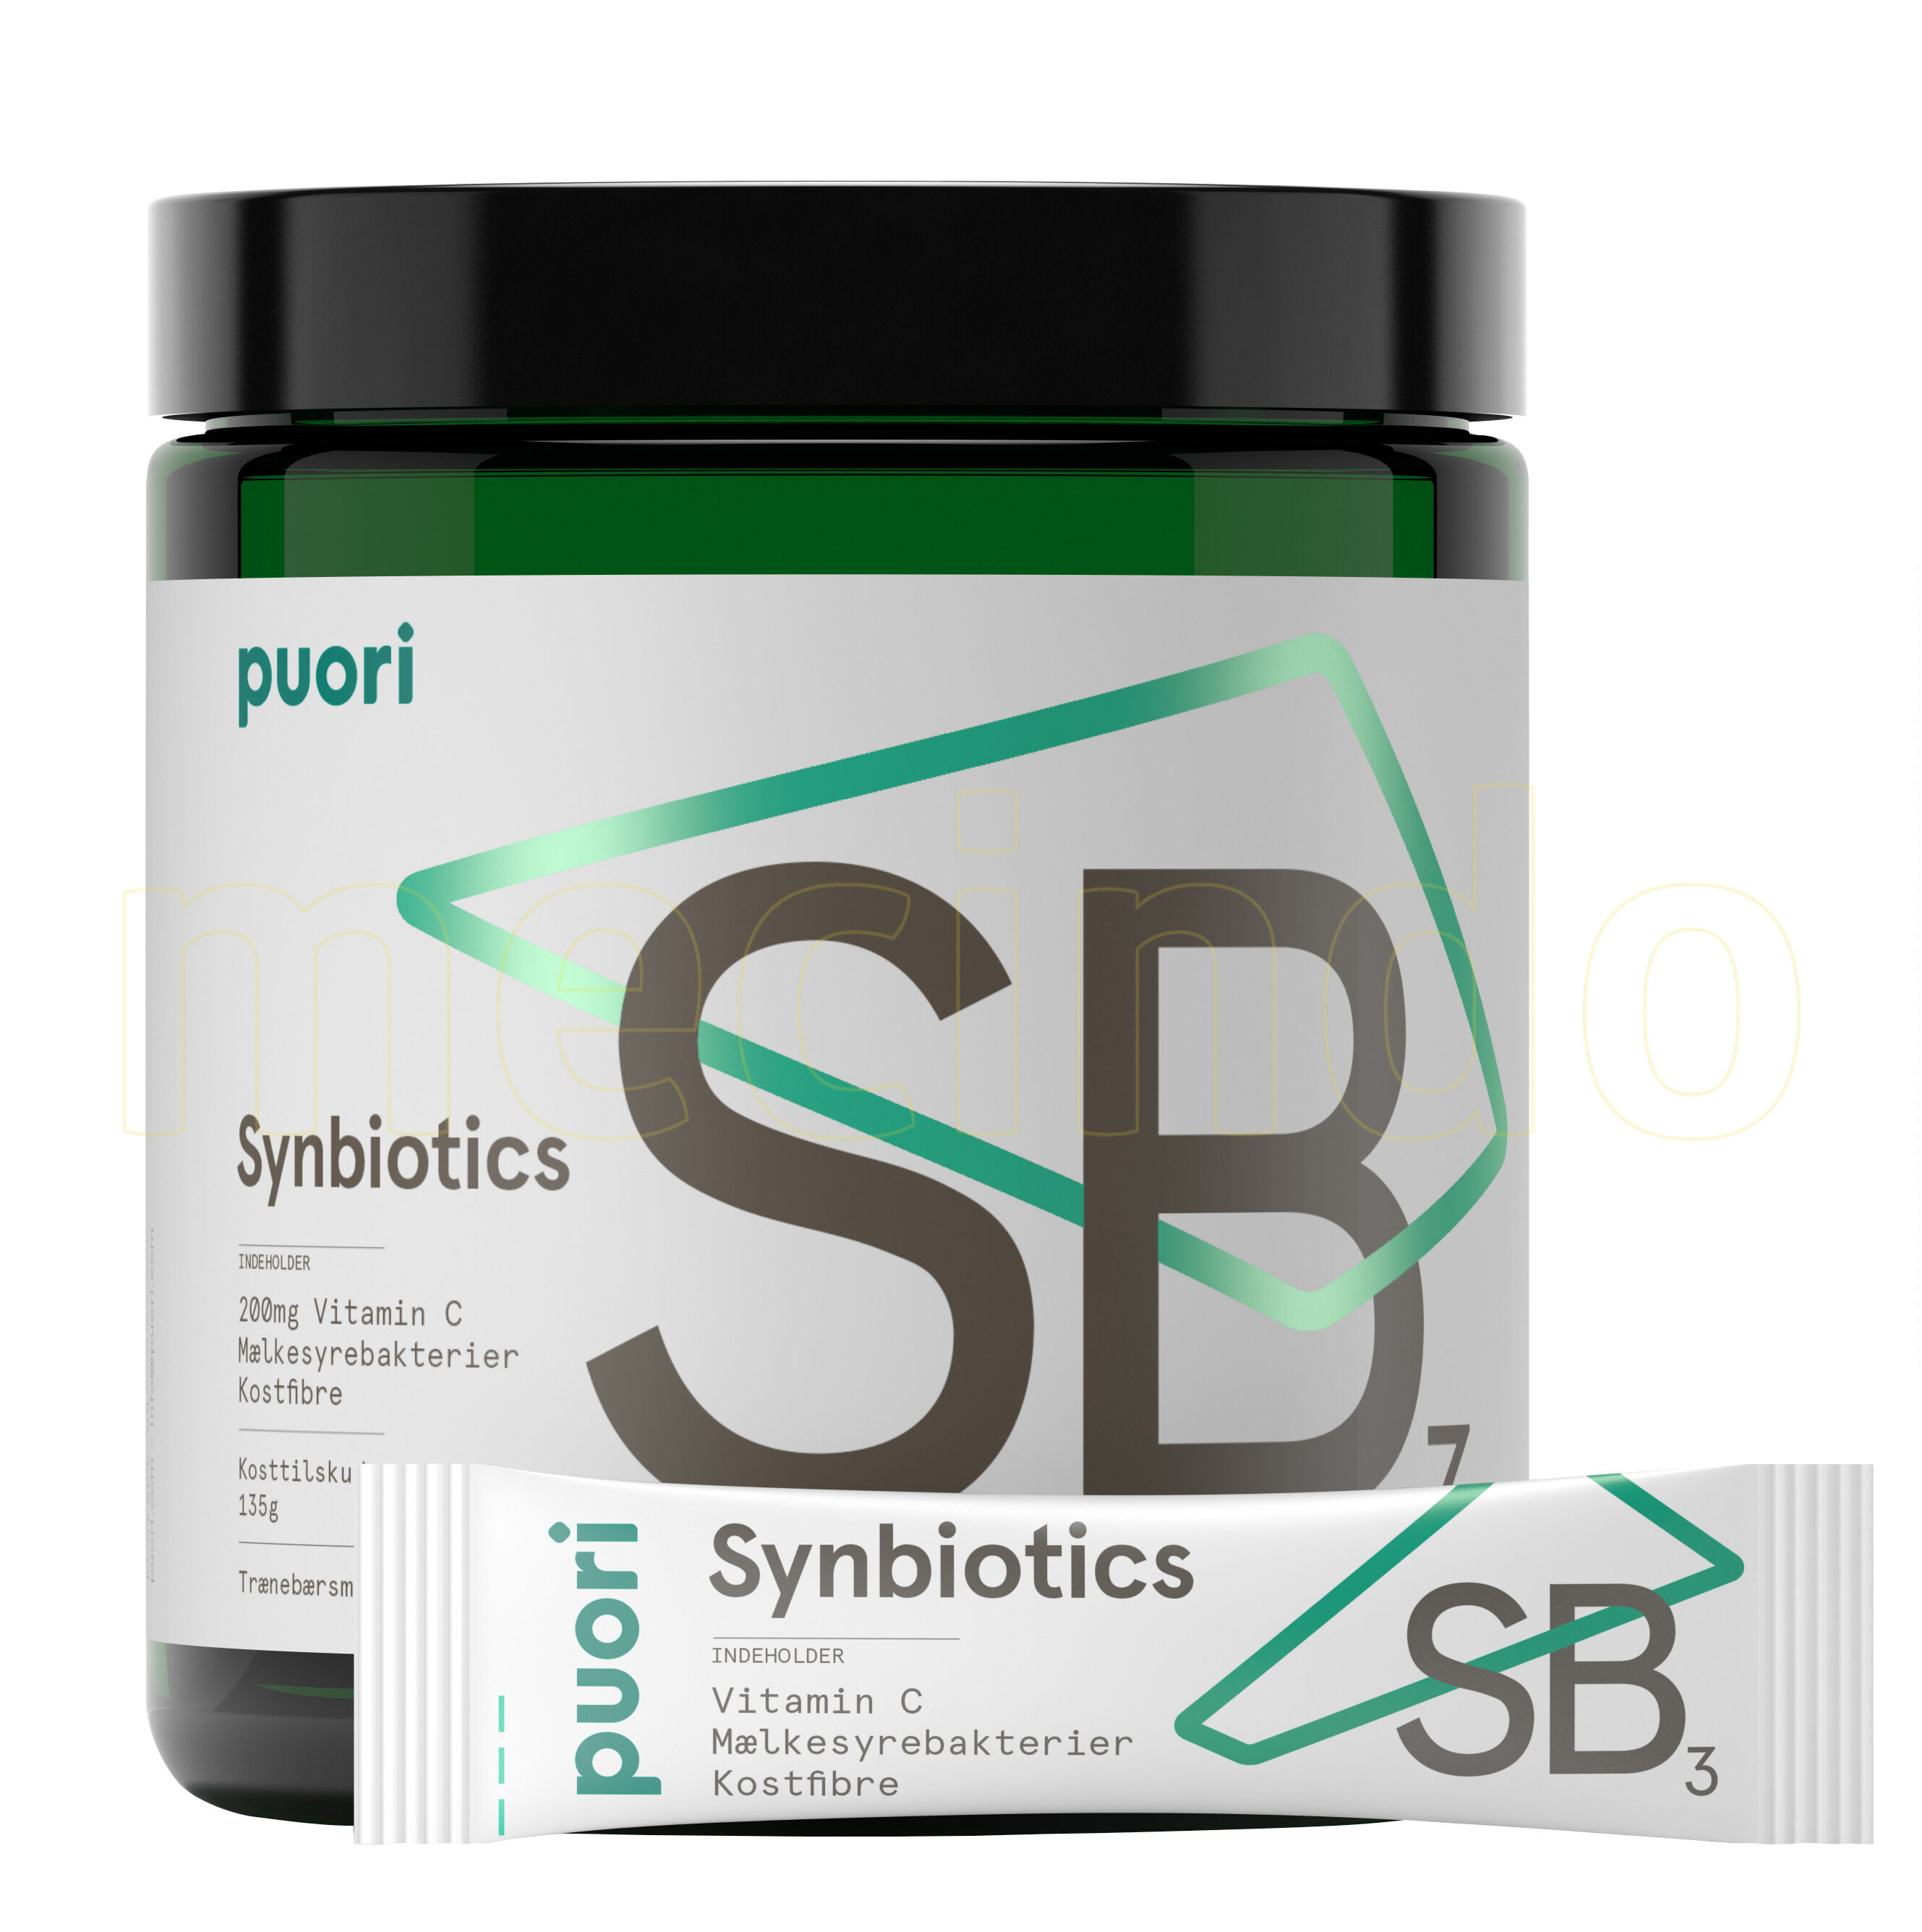 Puori Synbiotics Sb3 - 30 g